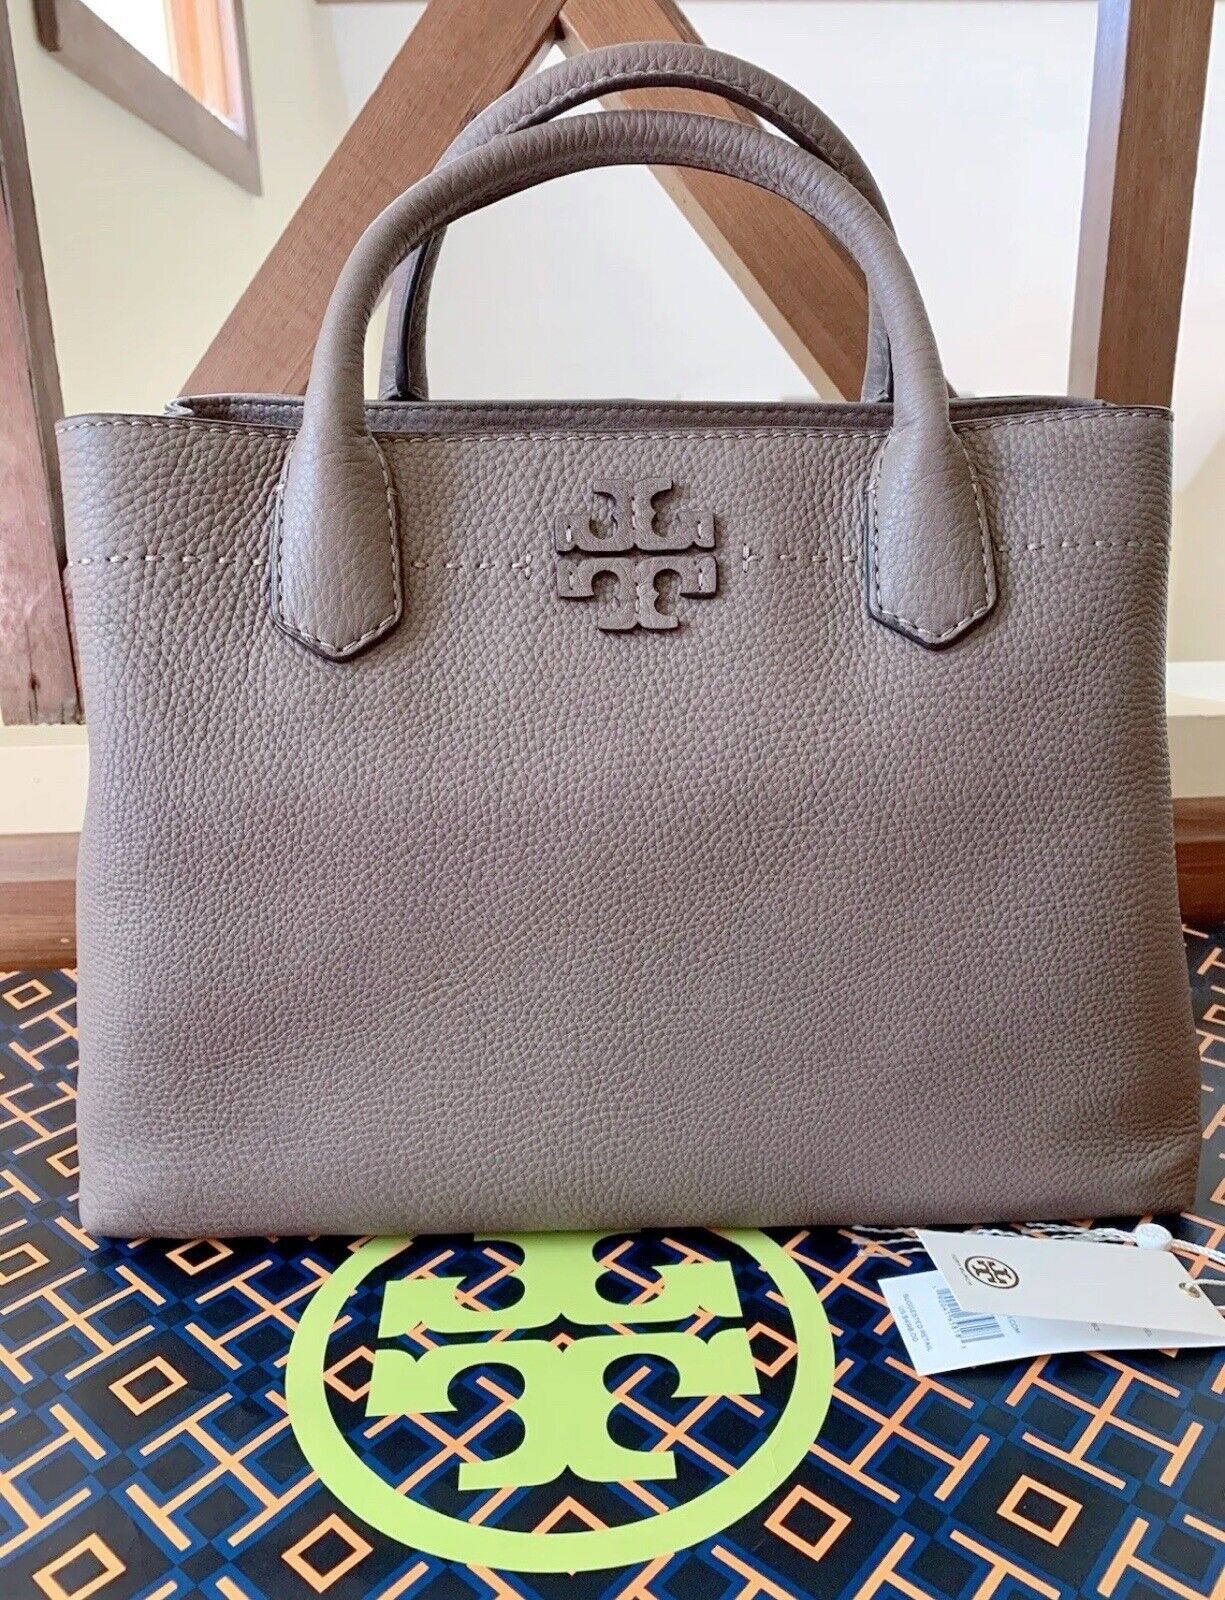 Tory Burch McGraw Multi-Compartment Handbag Silver Maple In Mint Condition  | eBay